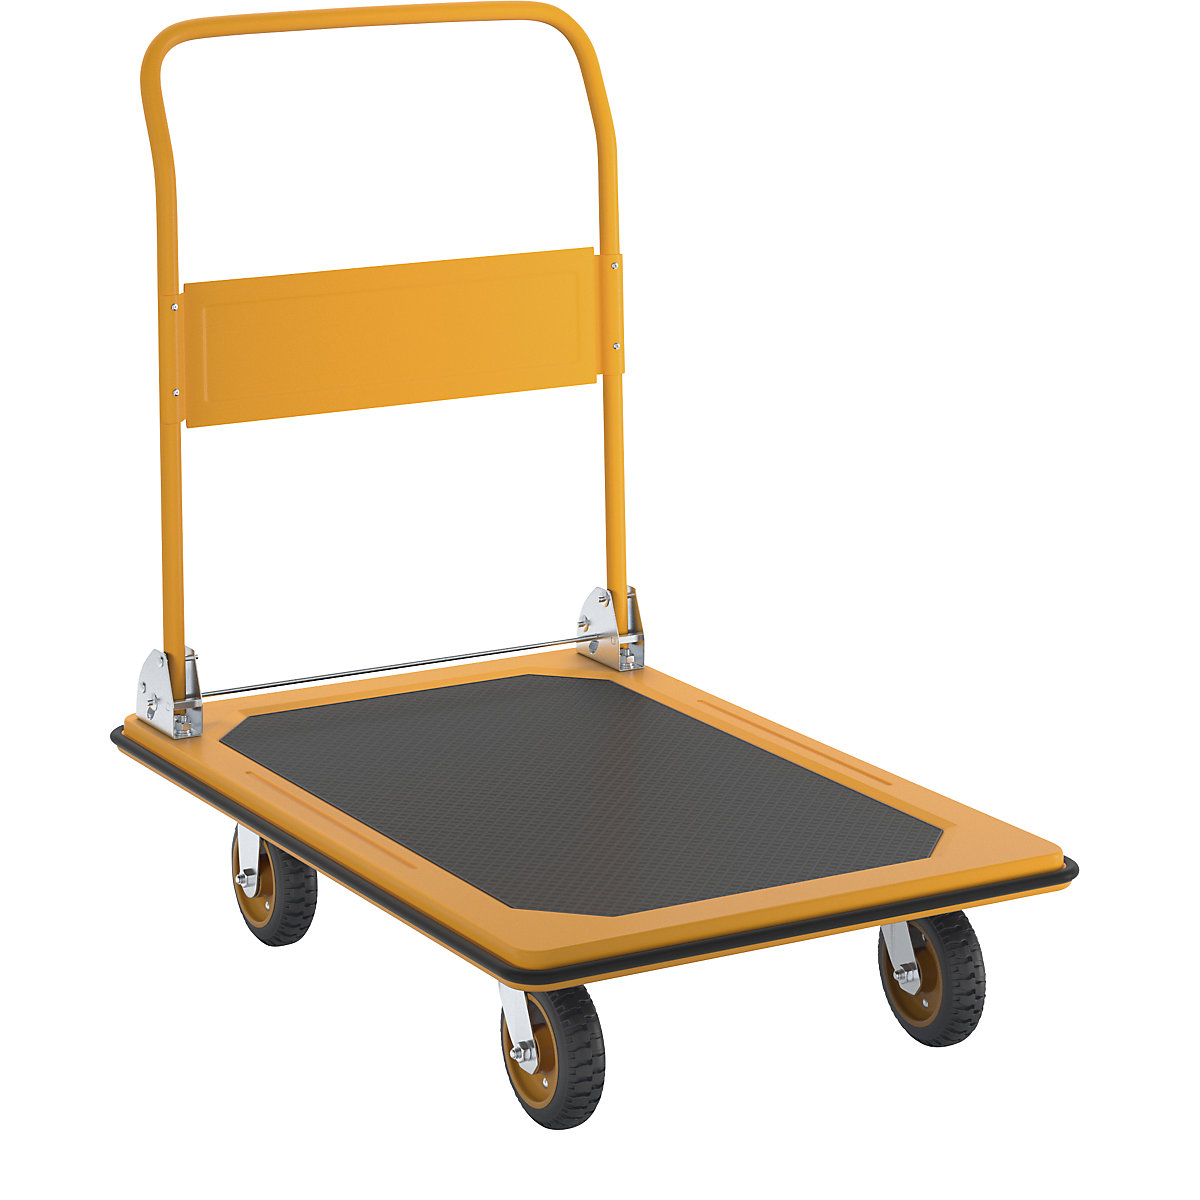 Profesionalna kolica s platformom – eurokraft basic, nosivost 300 kg, u dinja žutoj boji, kotači od pune gume-12